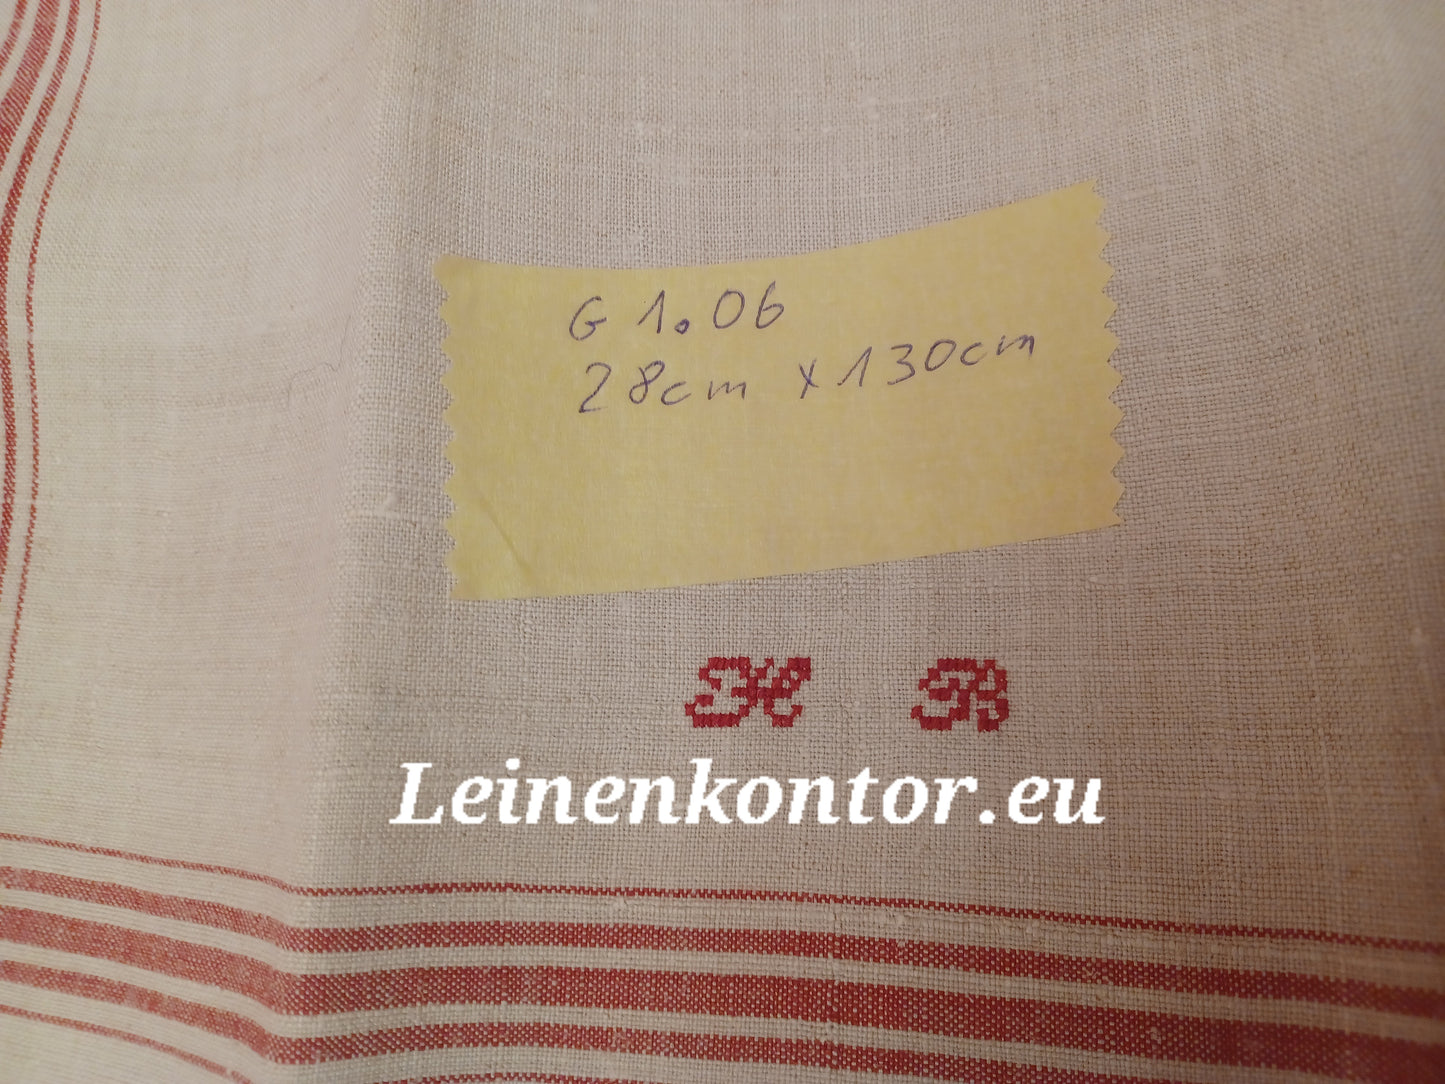 G1.06 (130cm x 28cm) Geschirrhandtuch Altes Bauerleinen Landhaus Leinenstoff Leinenhandtücher